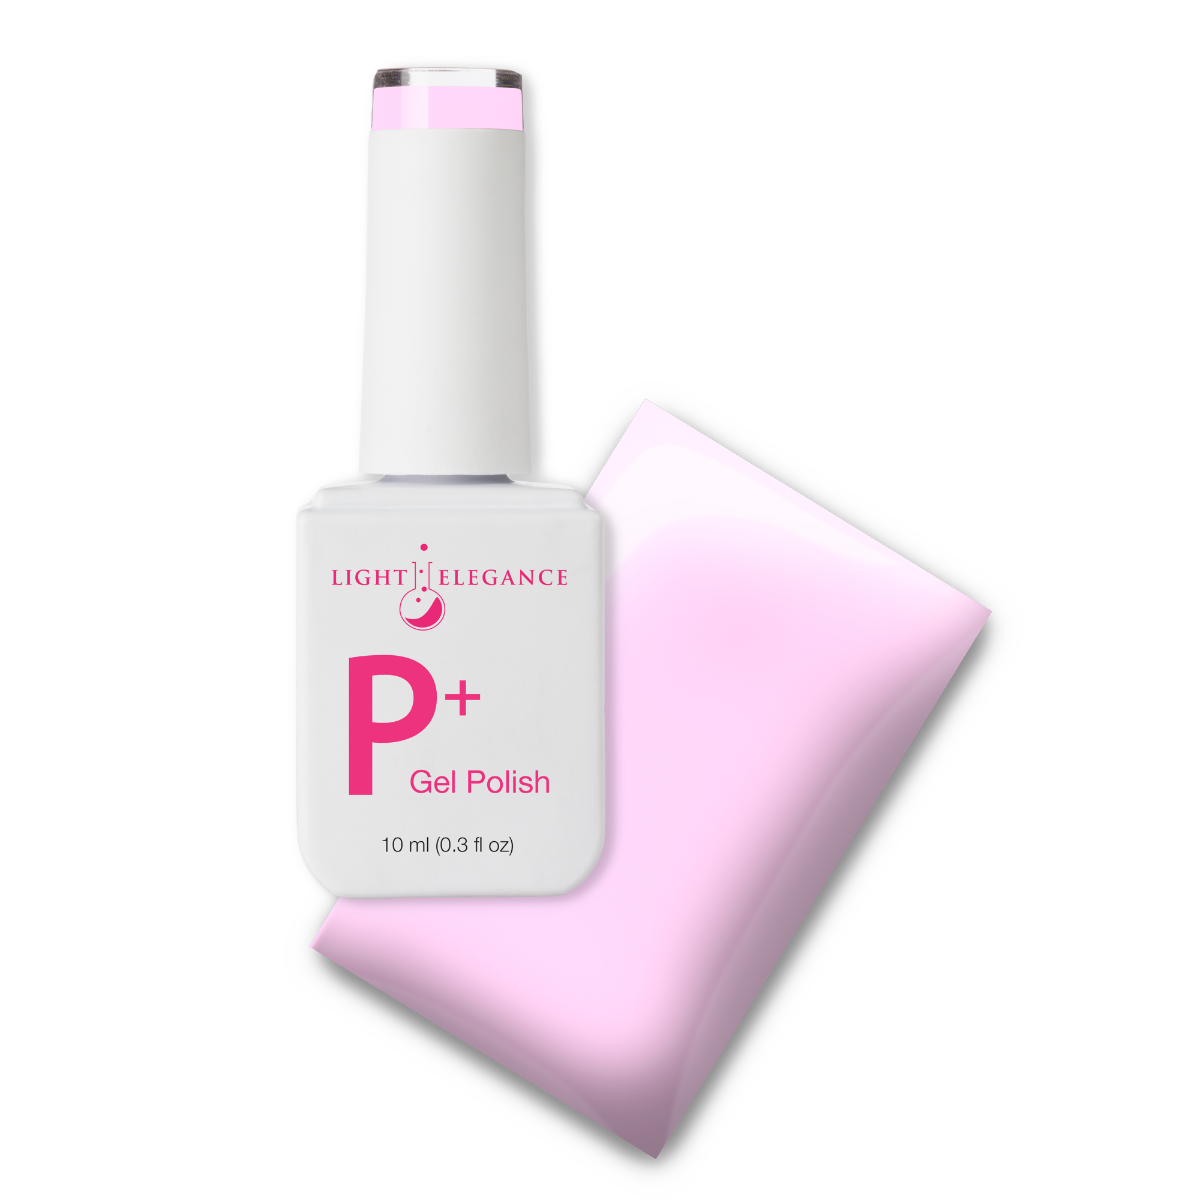 Light Elegance P+ Soak Off Color Gel - Soft Serve :: New Packaging